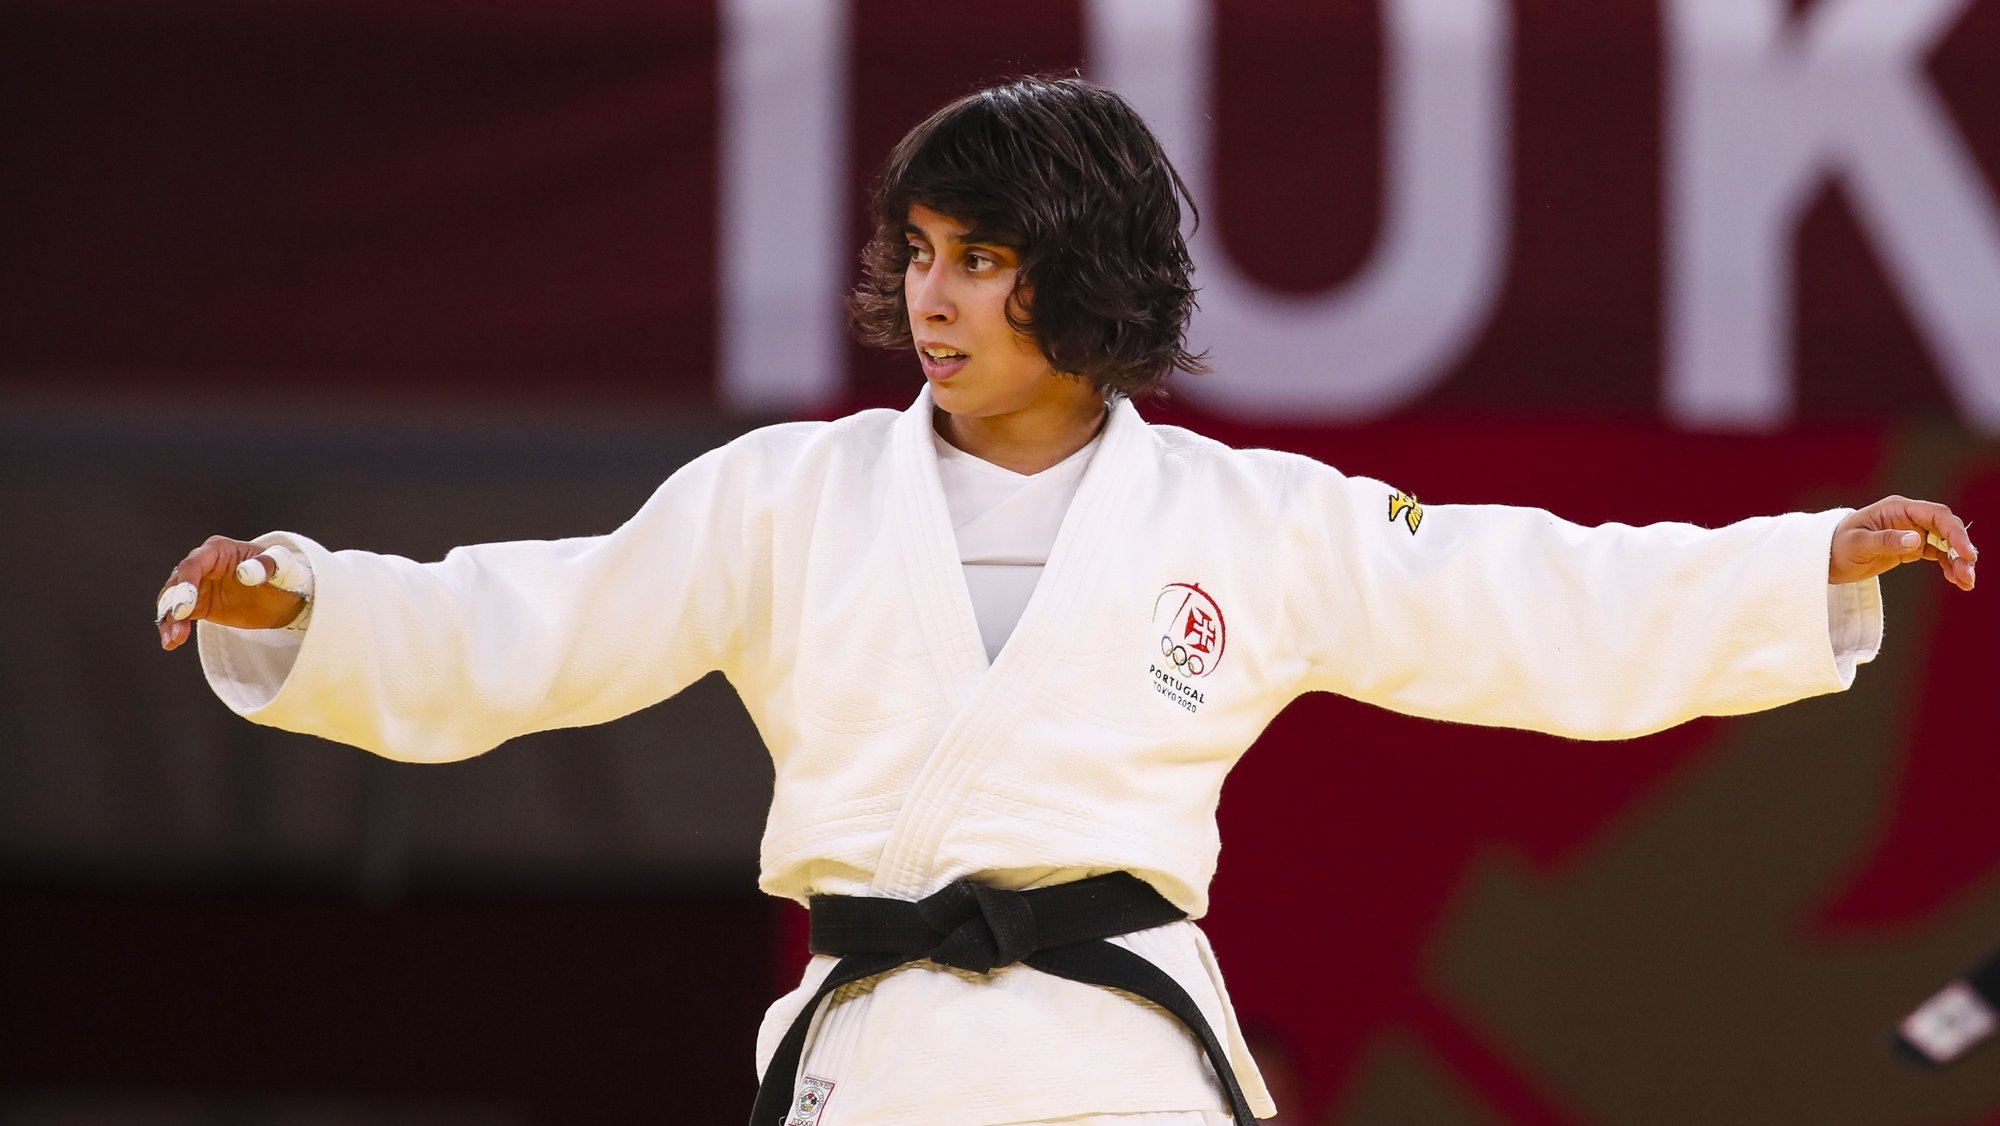 A judoca Catarina Costa reage após terminar no quinto lugar na categoria de -48 kg nos Jogos Olímpicos de Tóquio2020, ao perder no combate para a atribuição da medalha de bronze com a mongol Urantsetseg Munkhbat, na arena Nippon Budokan, Tóquio, Japão, 24 de julho de 2021